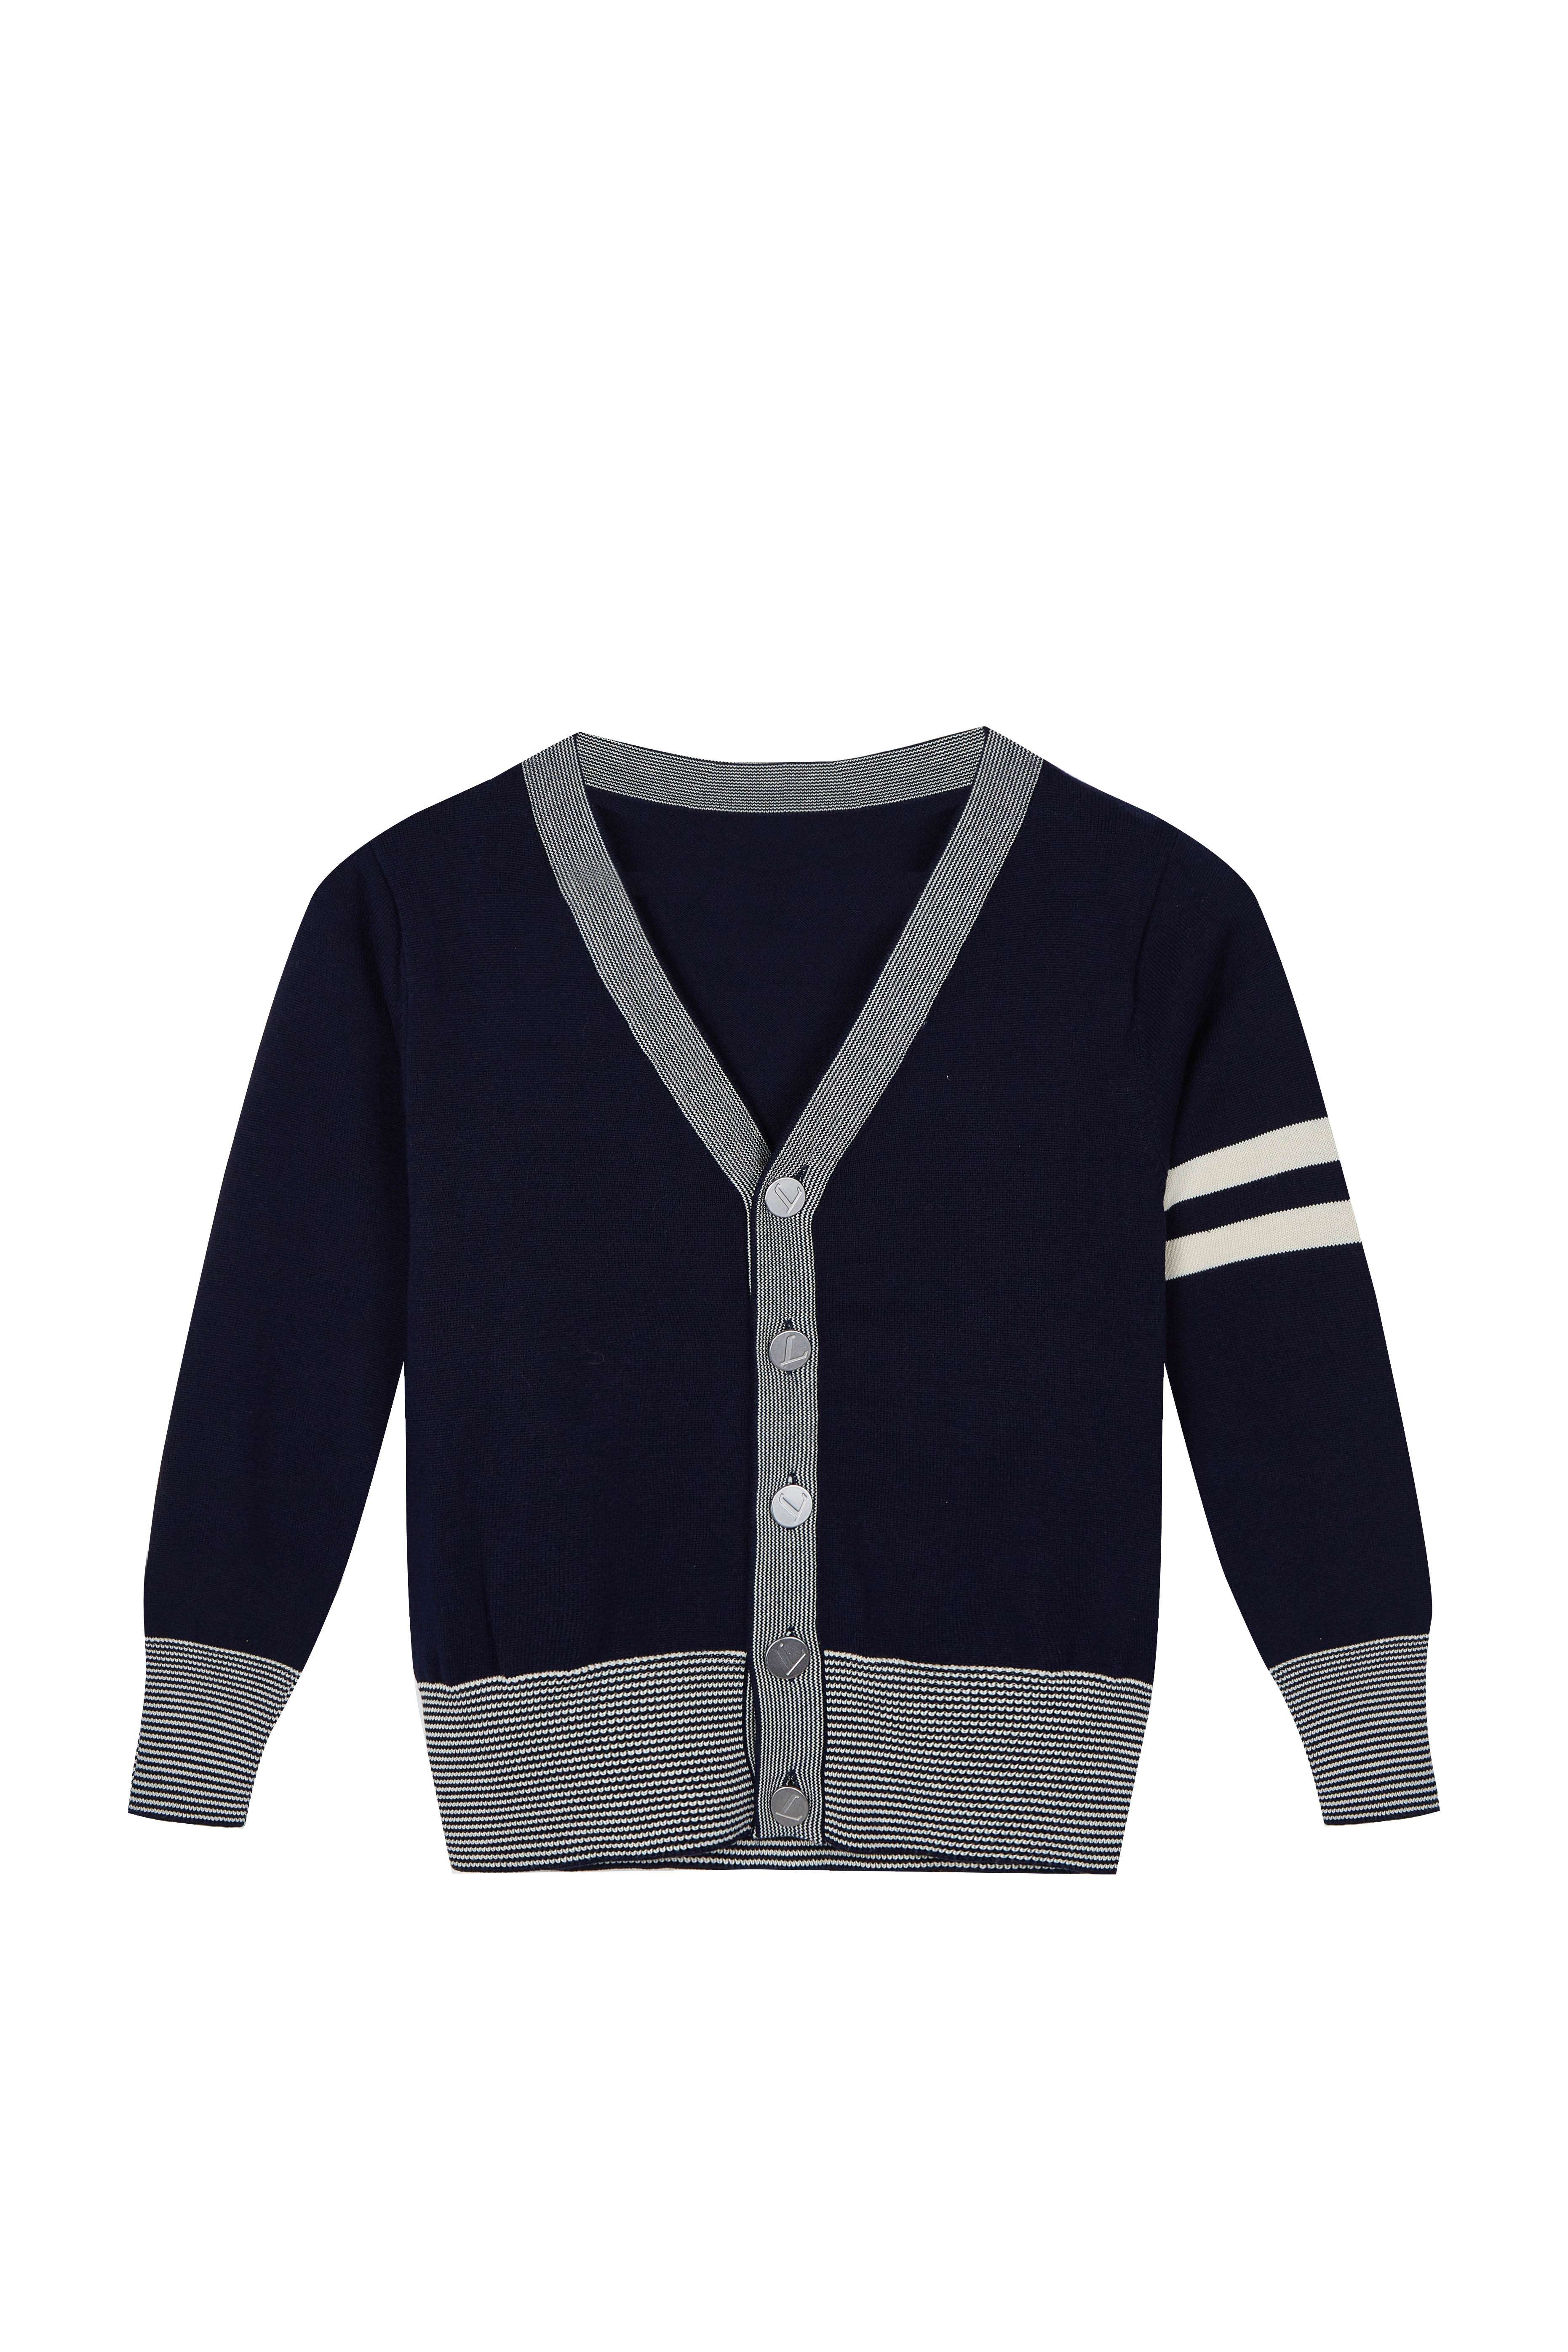 Boy's Sweater Casual Vest Cotton V-Neck School Uniform Button Cardigan